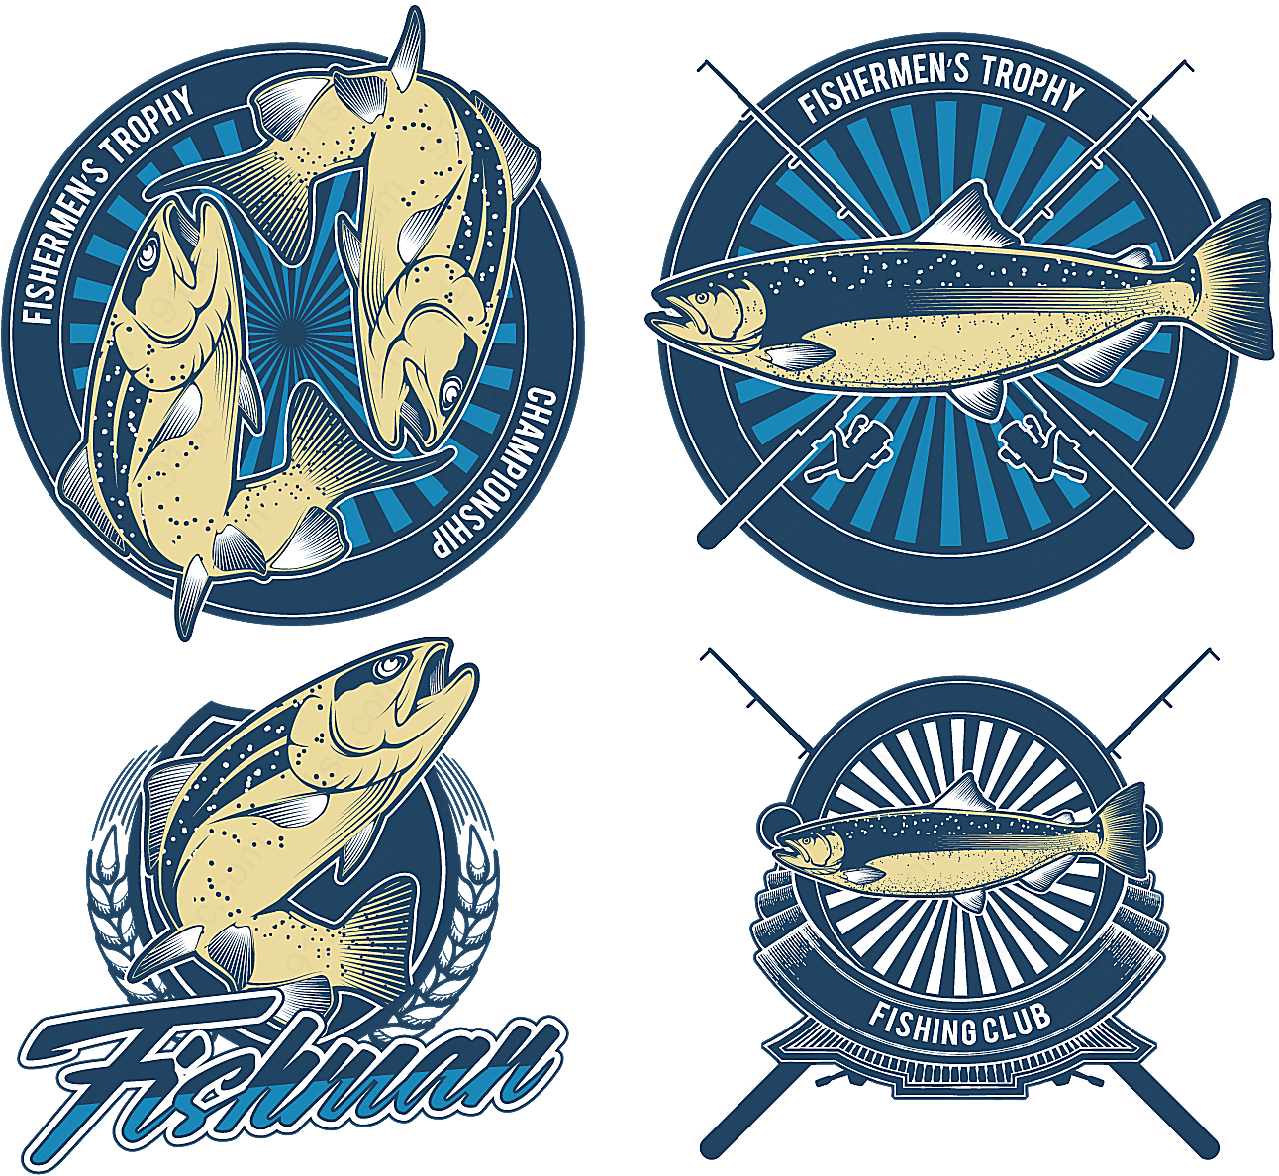 钓鱼俱乐部标志矢量logo图形